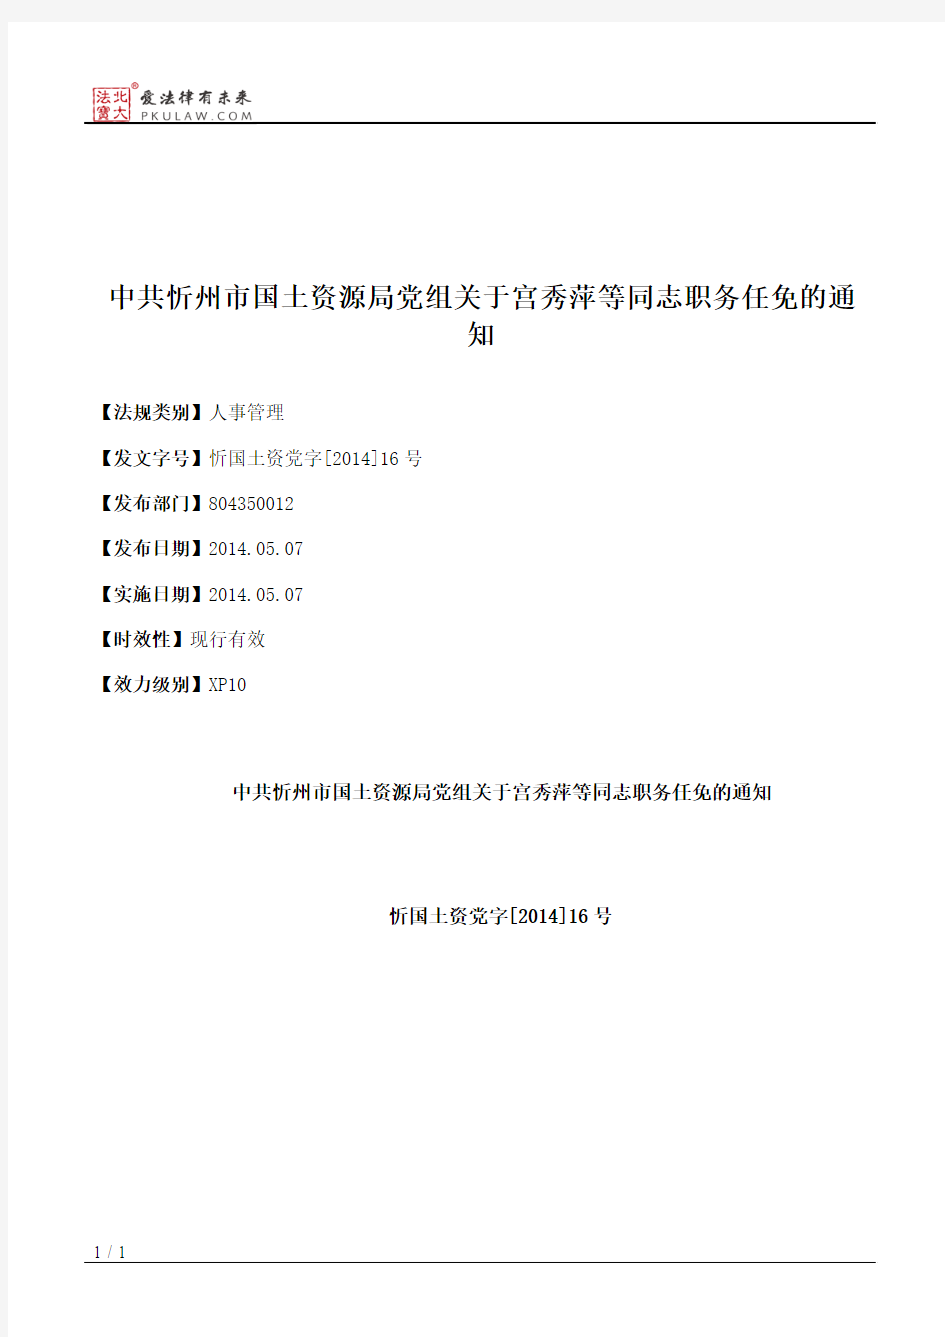 中共忻州市国土资源局党组关于宫秀萍等同志职务任免的通知